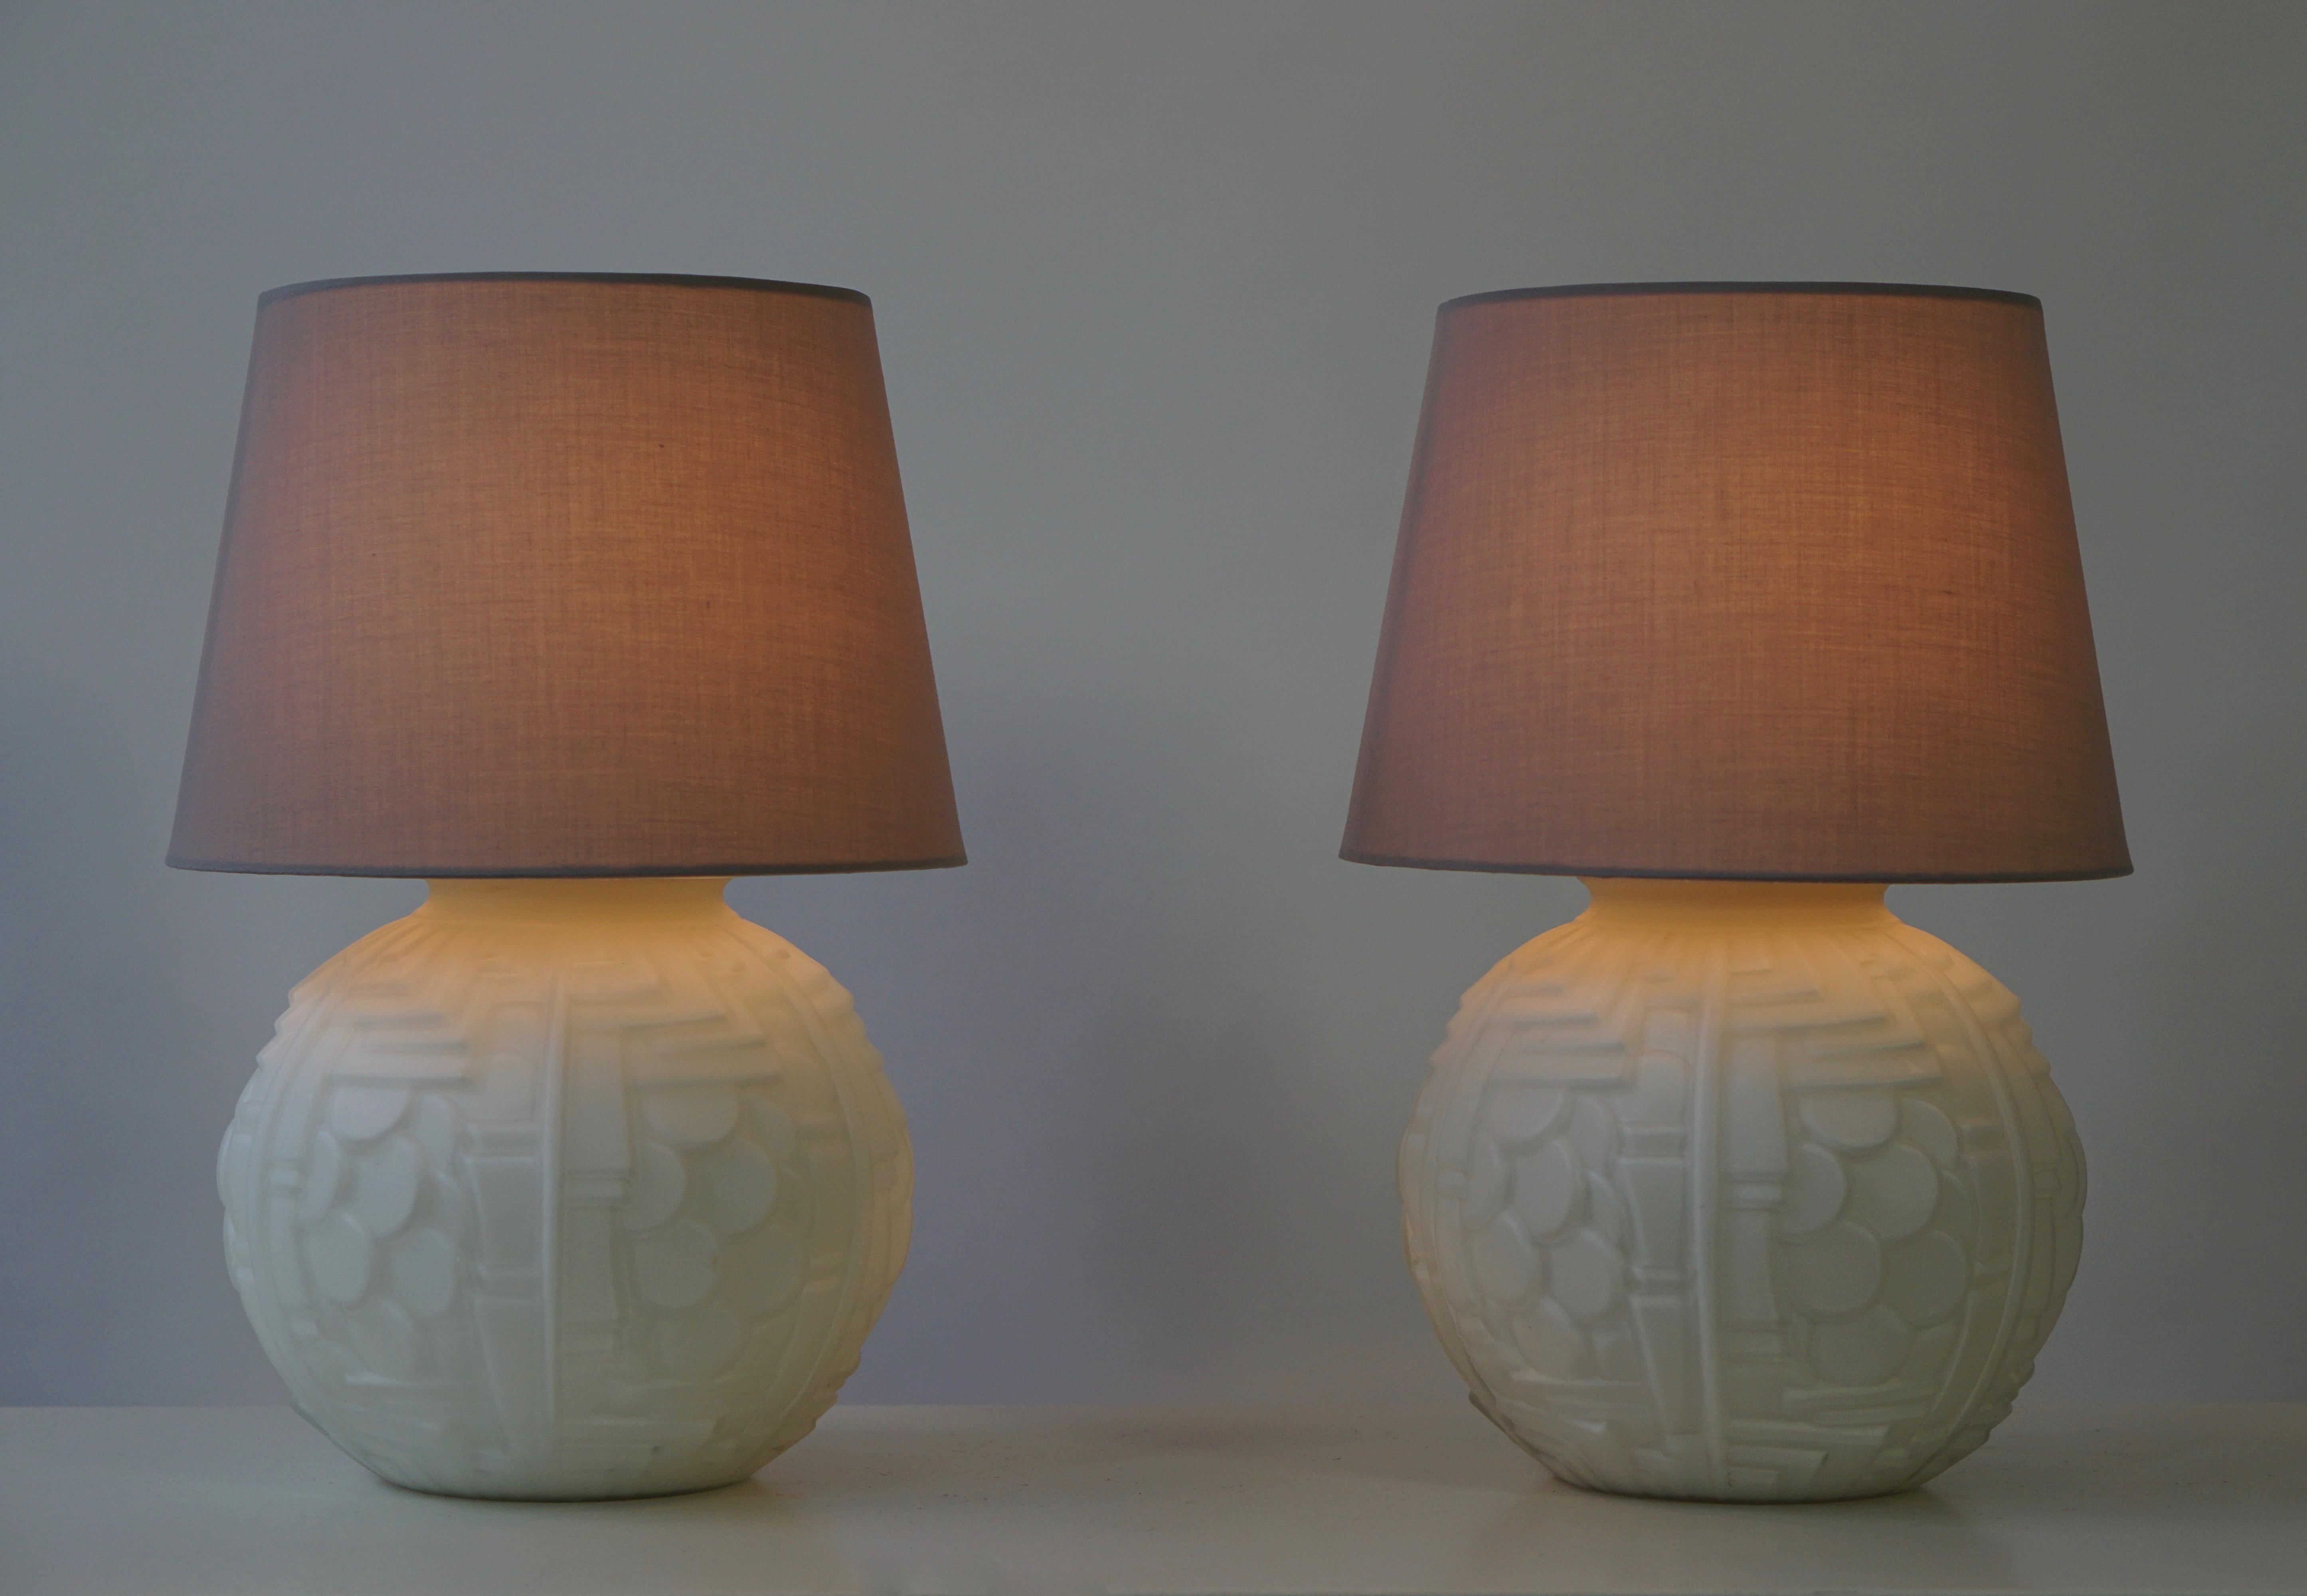 Zwei Tischlampen aus italienischem Muranoglas.
Durchmesser des Sockels 20 cm.
Durchmesser des Schirms 25 cm.
Höhe 36 cm.